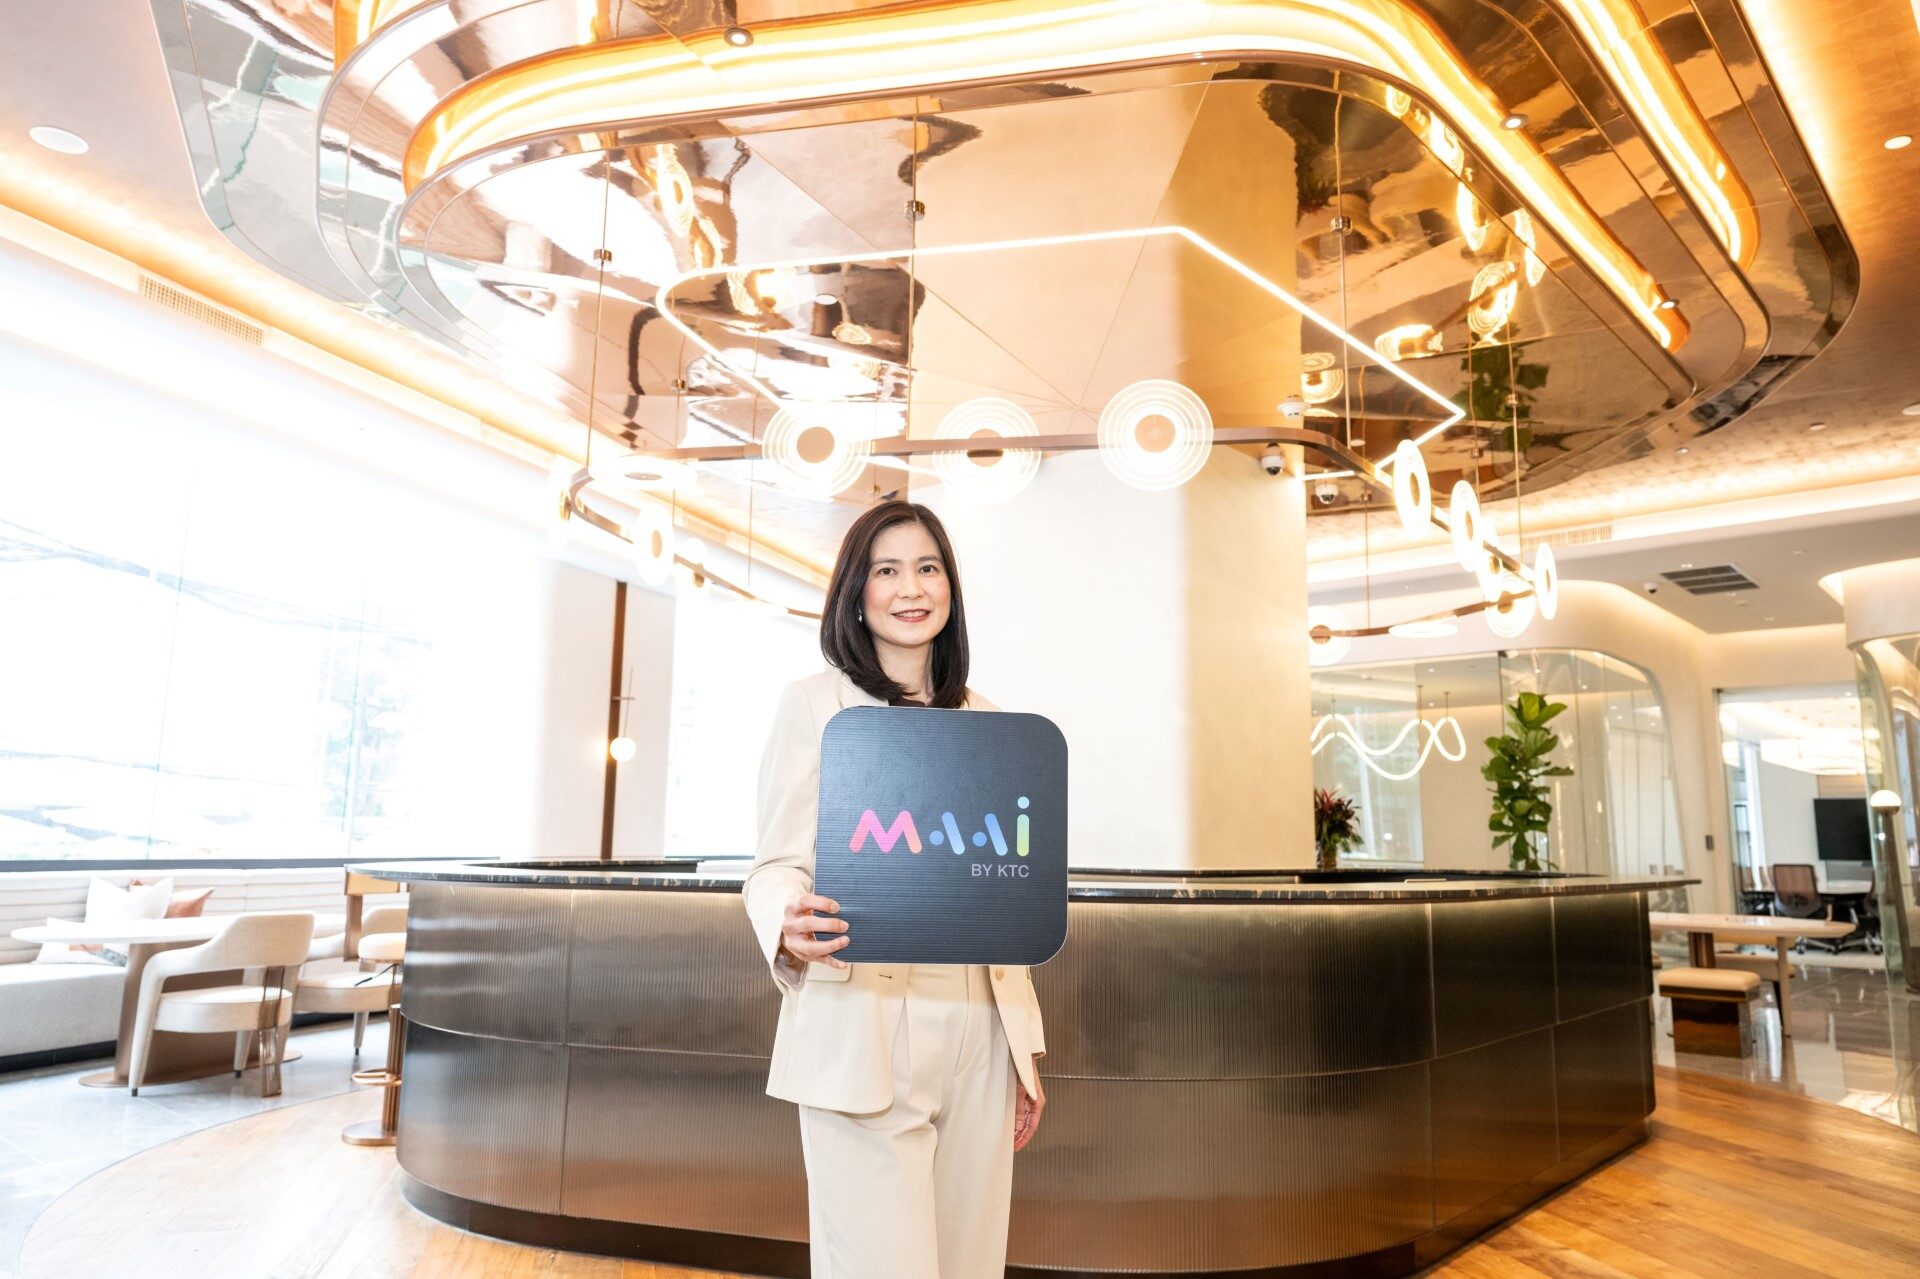 นางสาวอุษณีย์​ เลาหะวรนันท์ ผู้บริหารสูงสุดสายงานสื่อสารการตลาดและธุรกิจ MAAI​ BY KTC “เคทีซี” หรือ บริษัท บัตรกรุงไทย จำกัด (มหาชน)